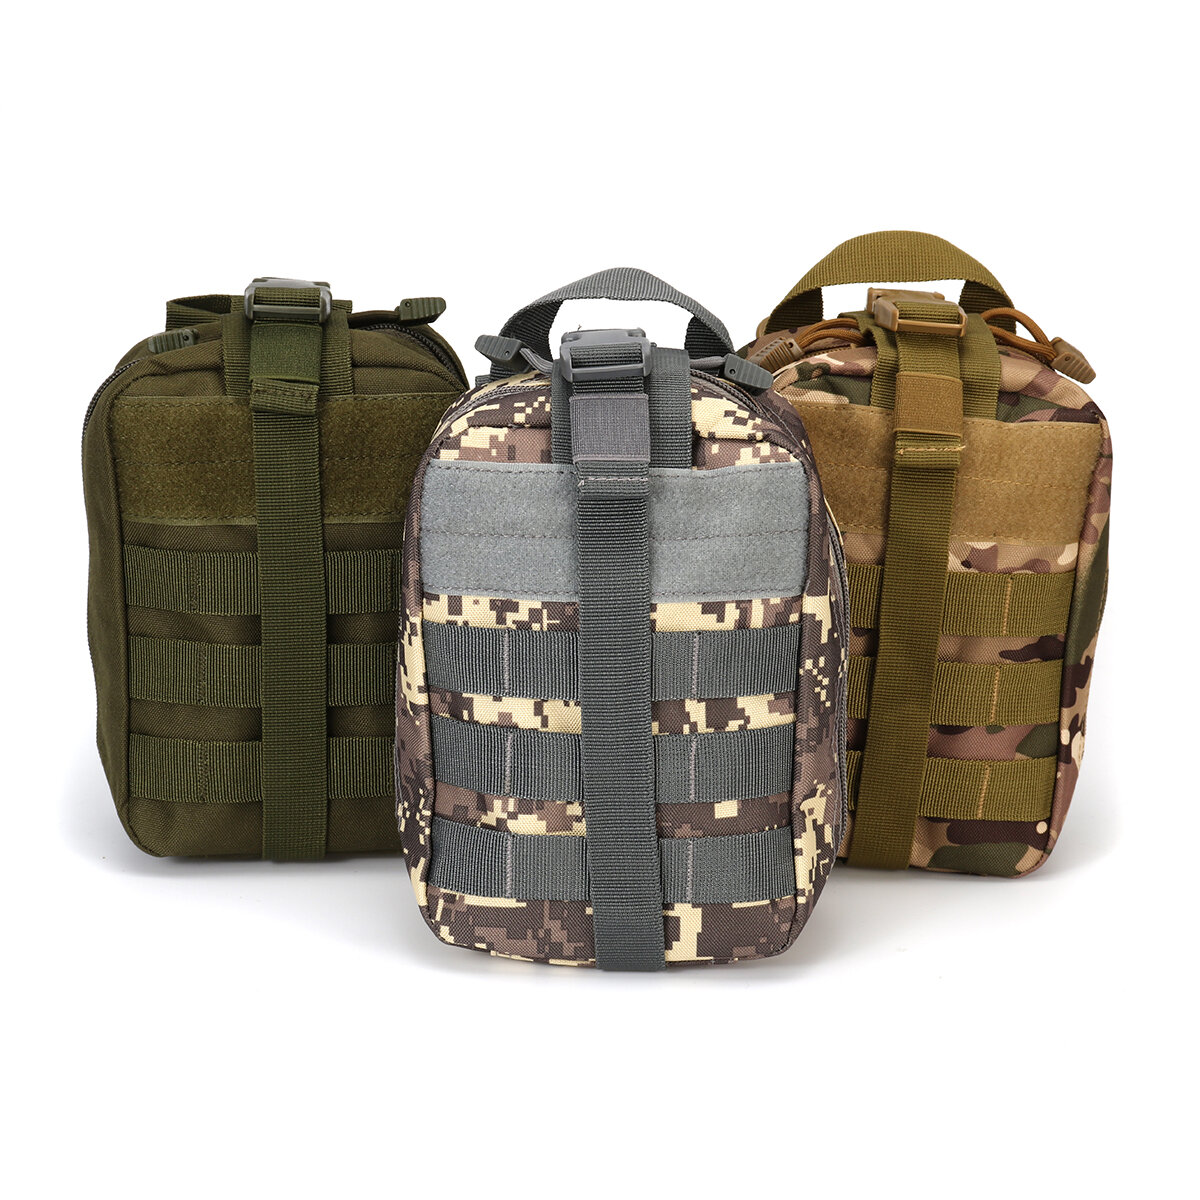 Takticzna torba na pas o pojemności 2,7 litra, wojskowa torba na pasie, wisząca torba na przechowywanie do obozowania i polowania na świeżym powietrzu.